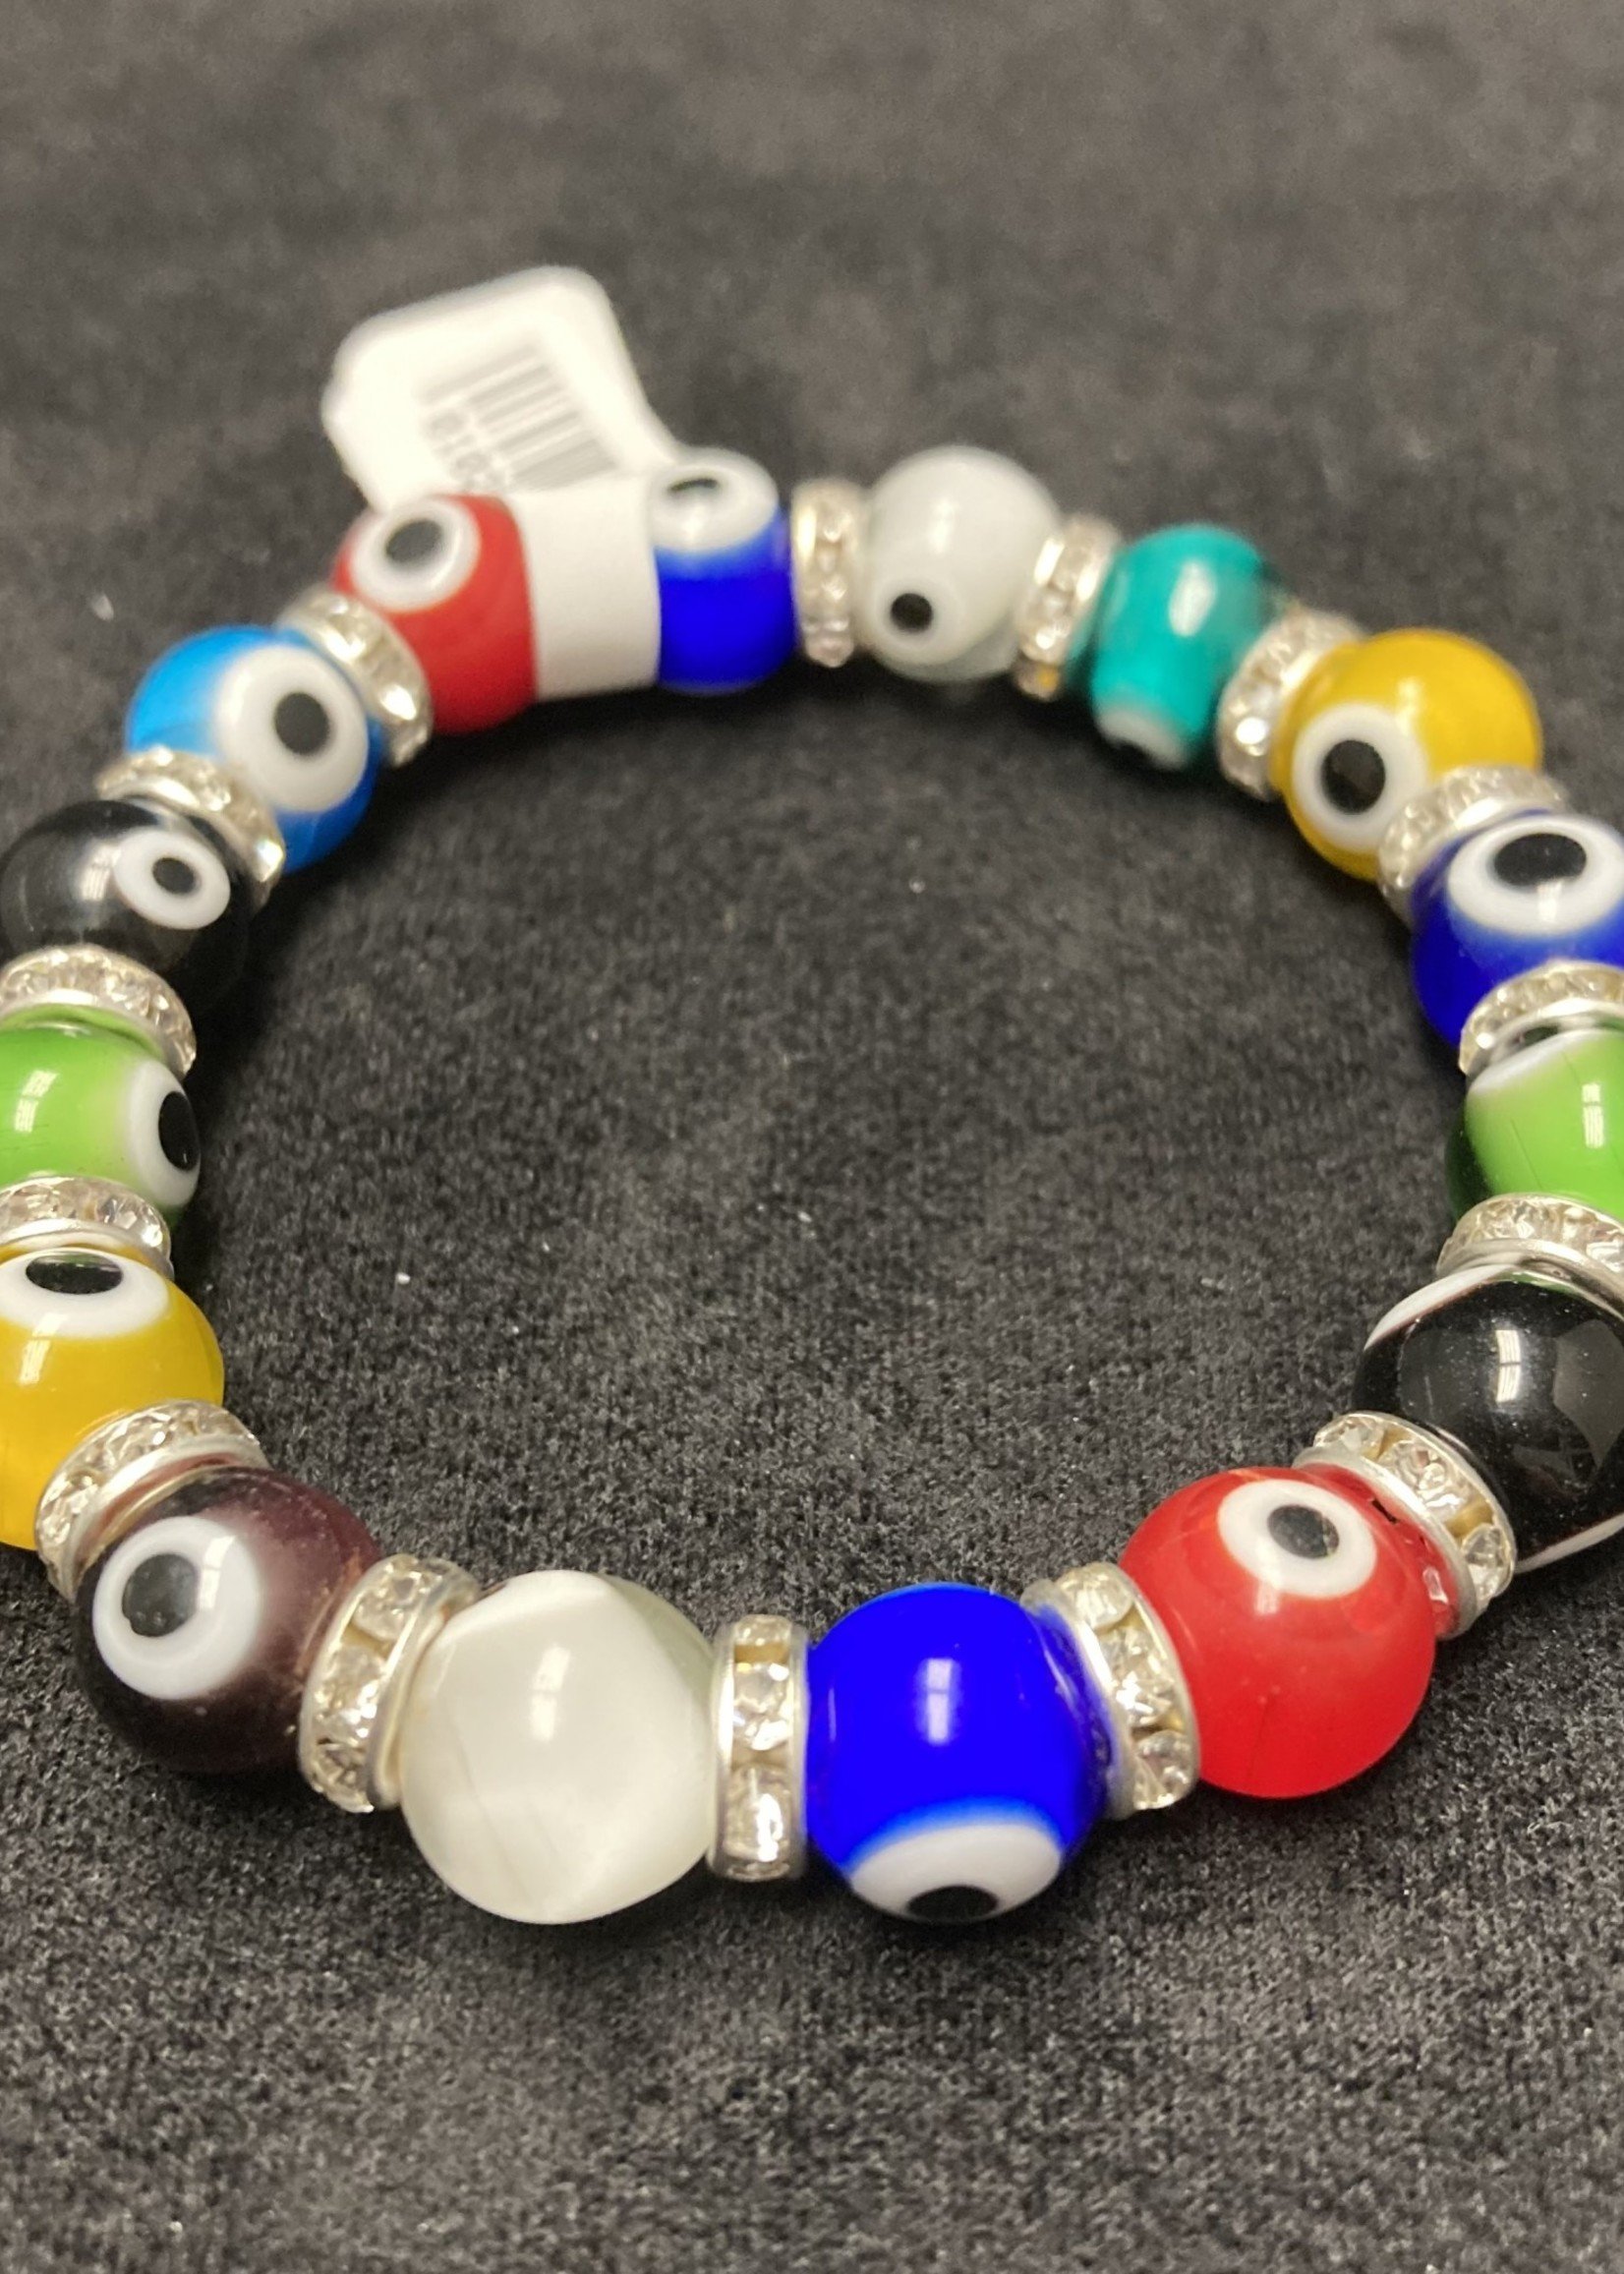 Bracelet - Evil Eye Glass LG Multicolor Beads